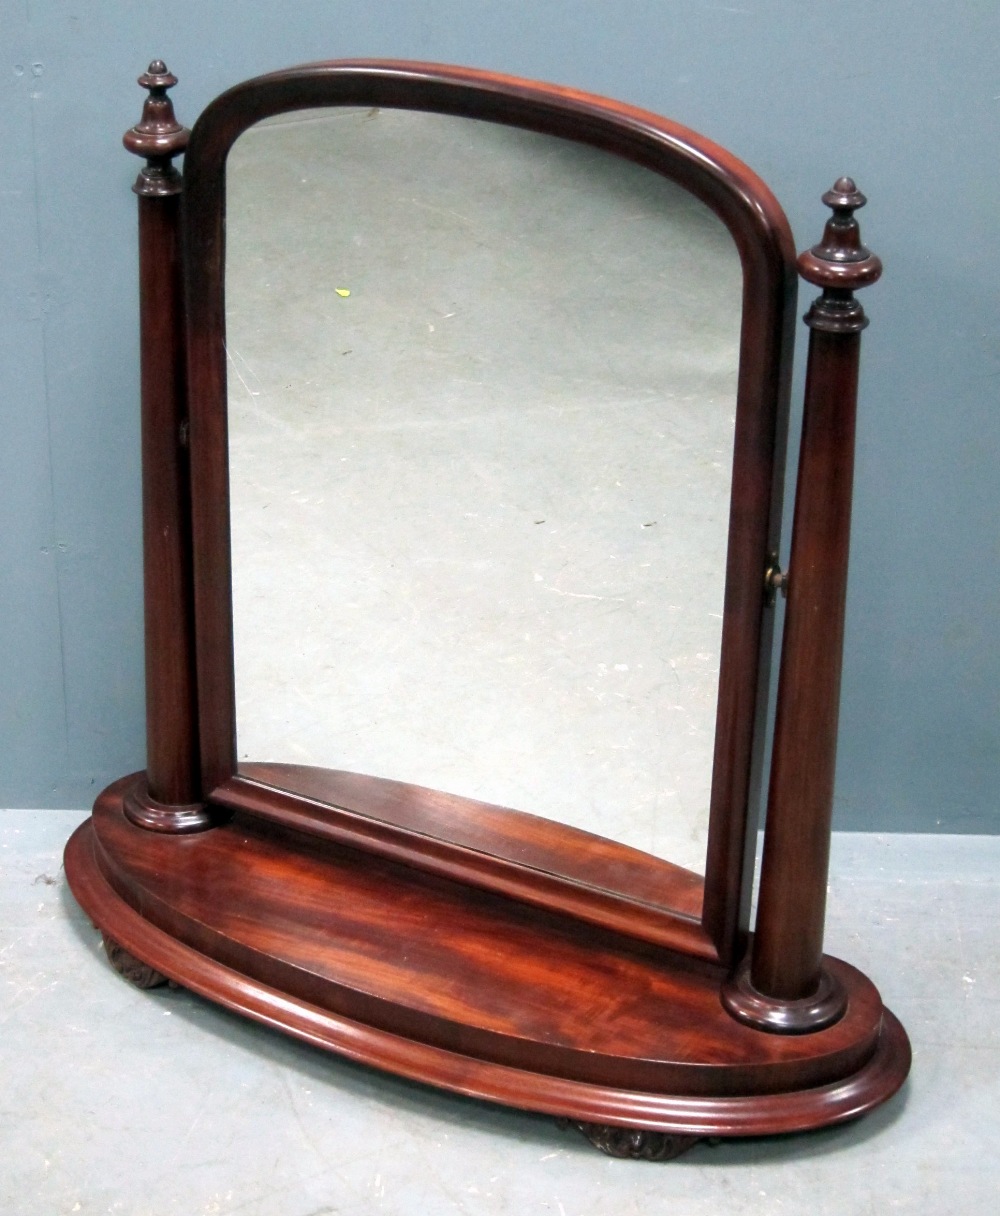 Mahogany bedroom mirror with shaped base